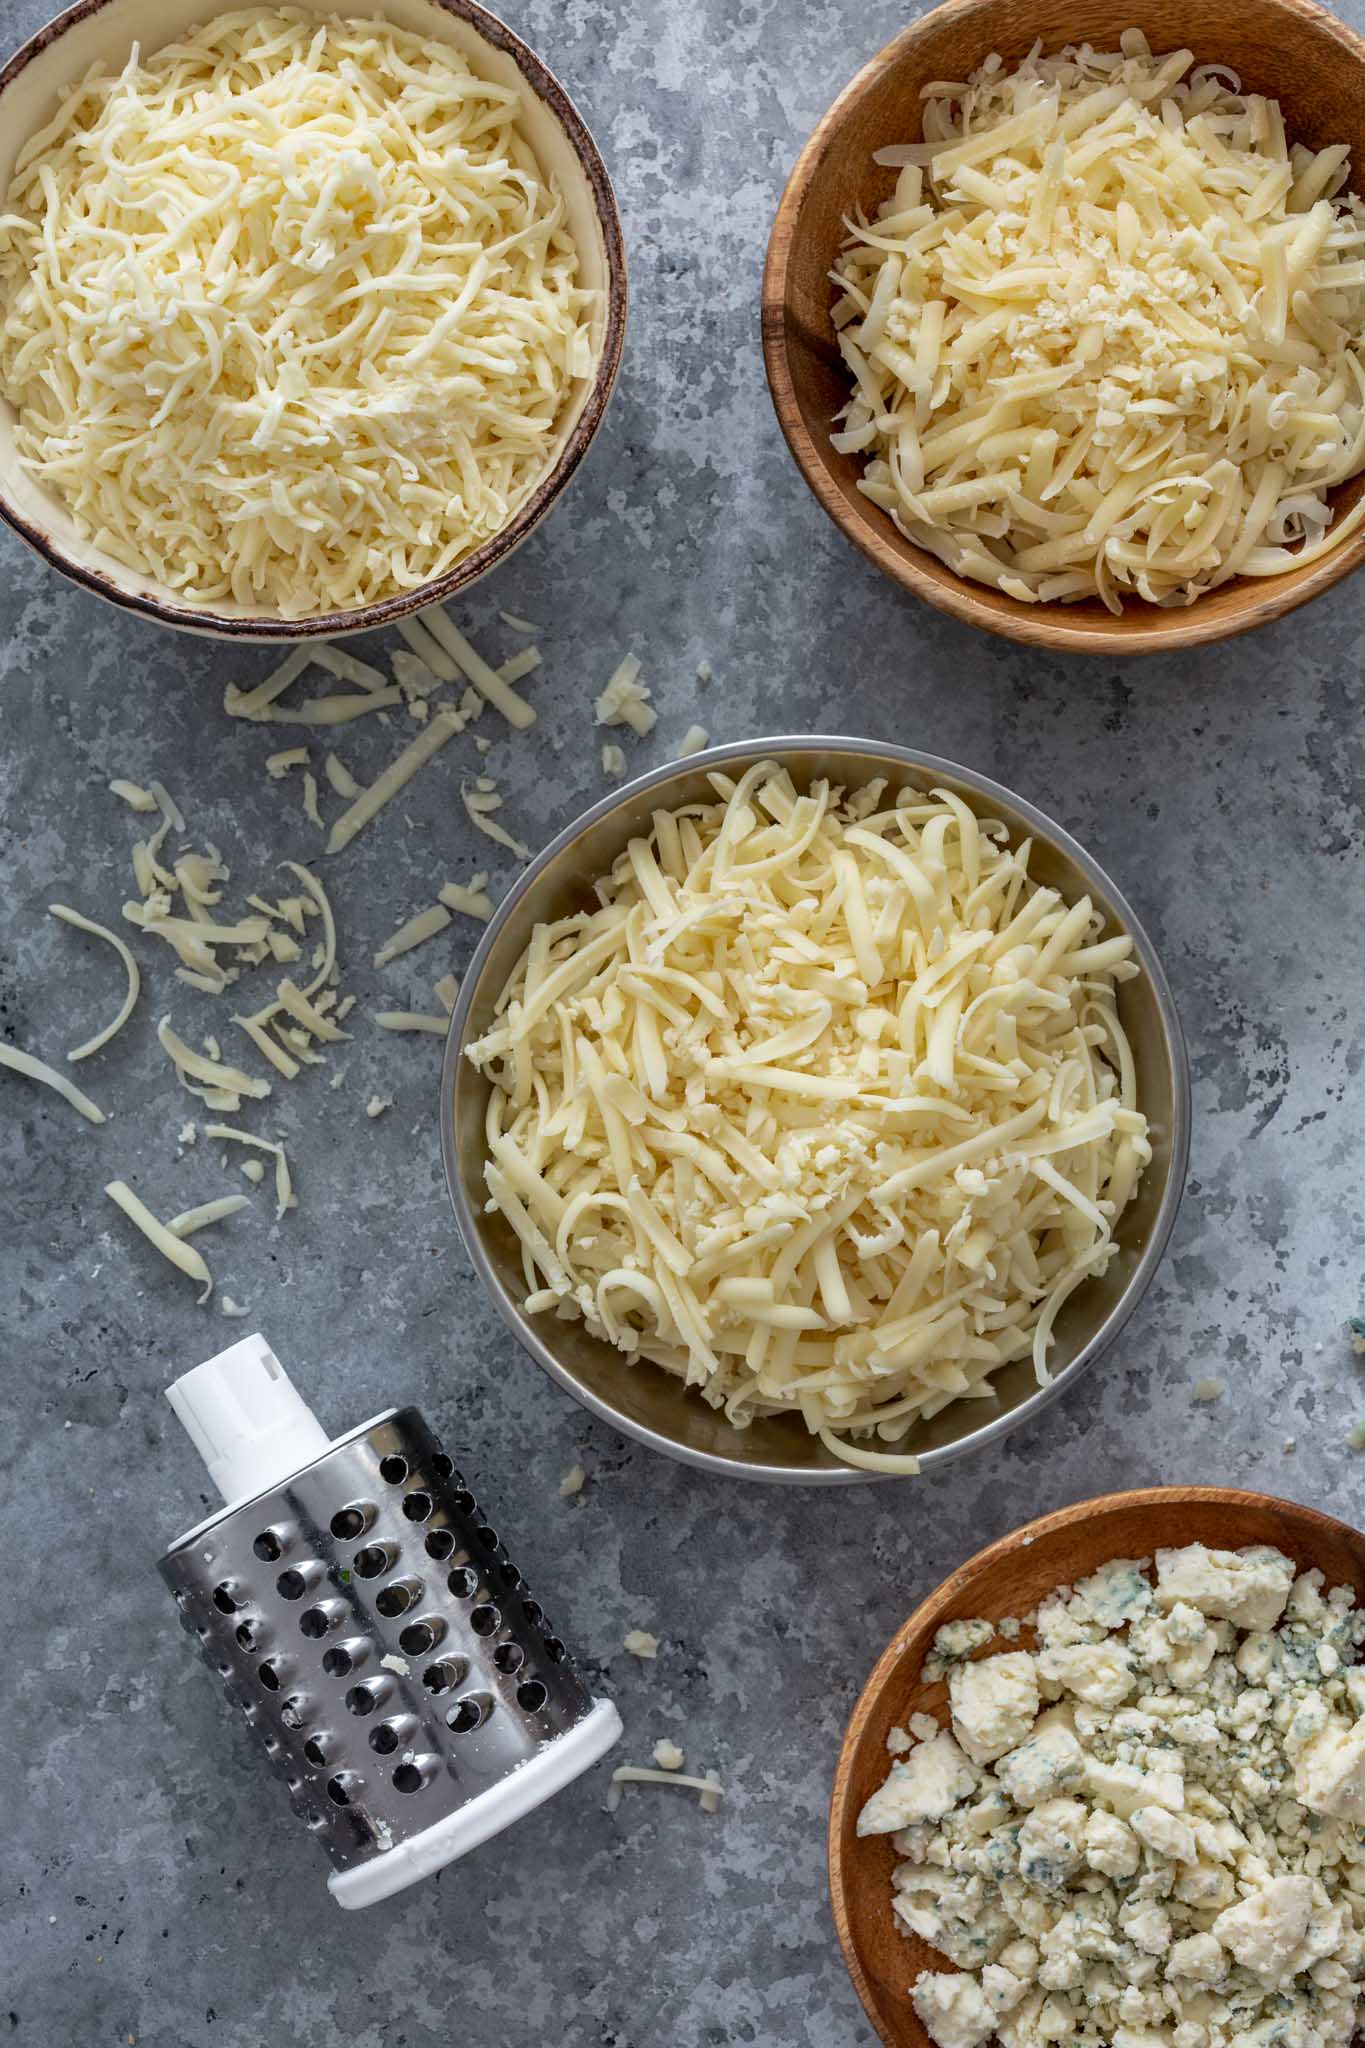 Four types of cheese: gorgonzola, gruyere, mozzarella and parmesan.